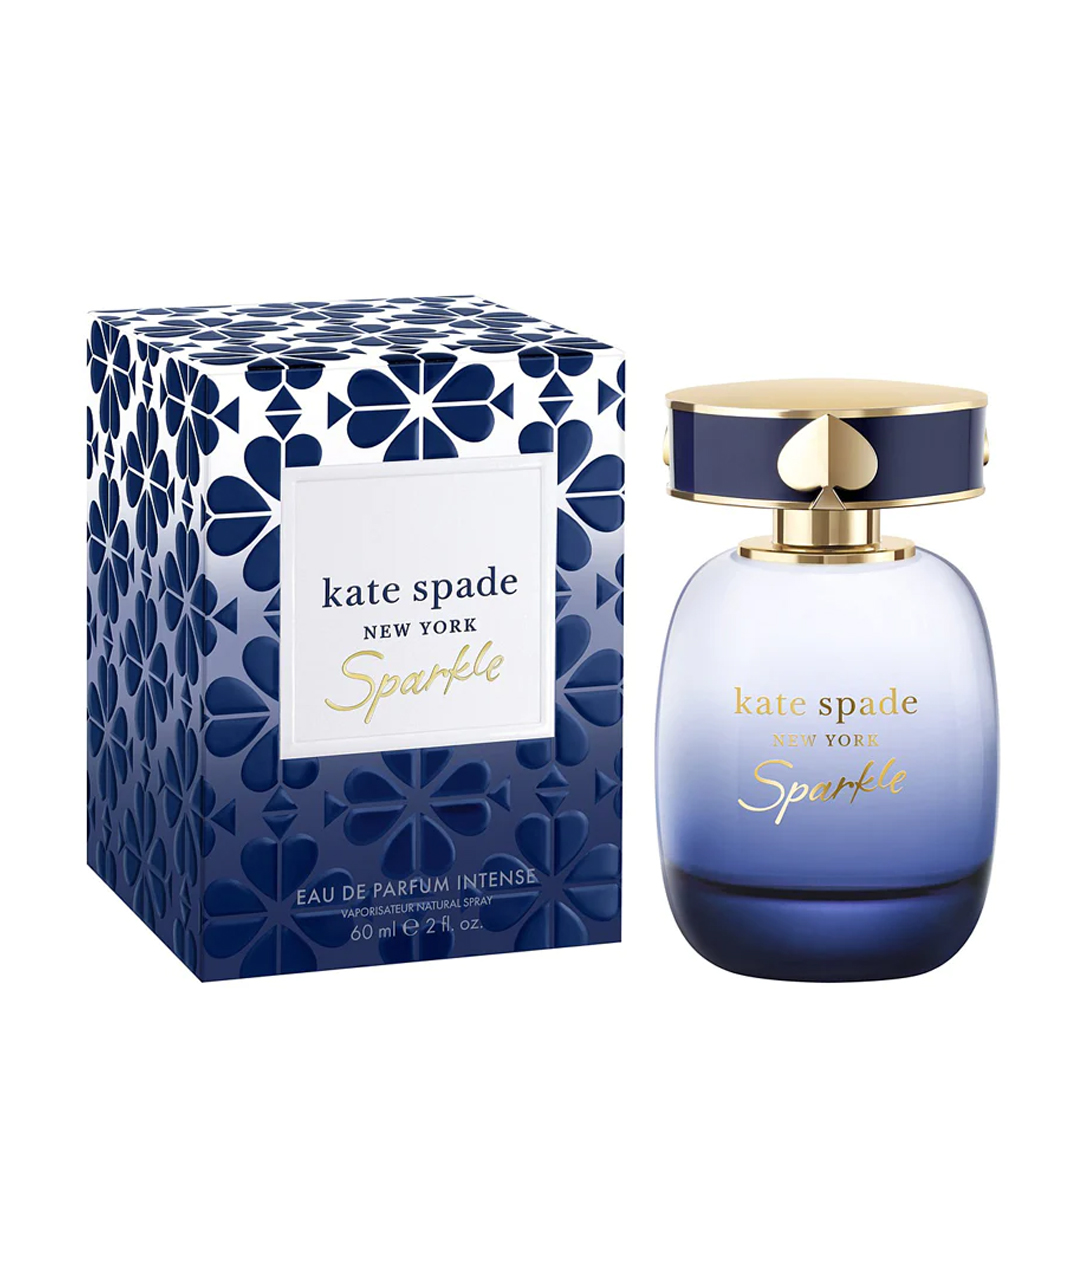 Perfume «Kate Spade» Sparkle, for women, 60 ml